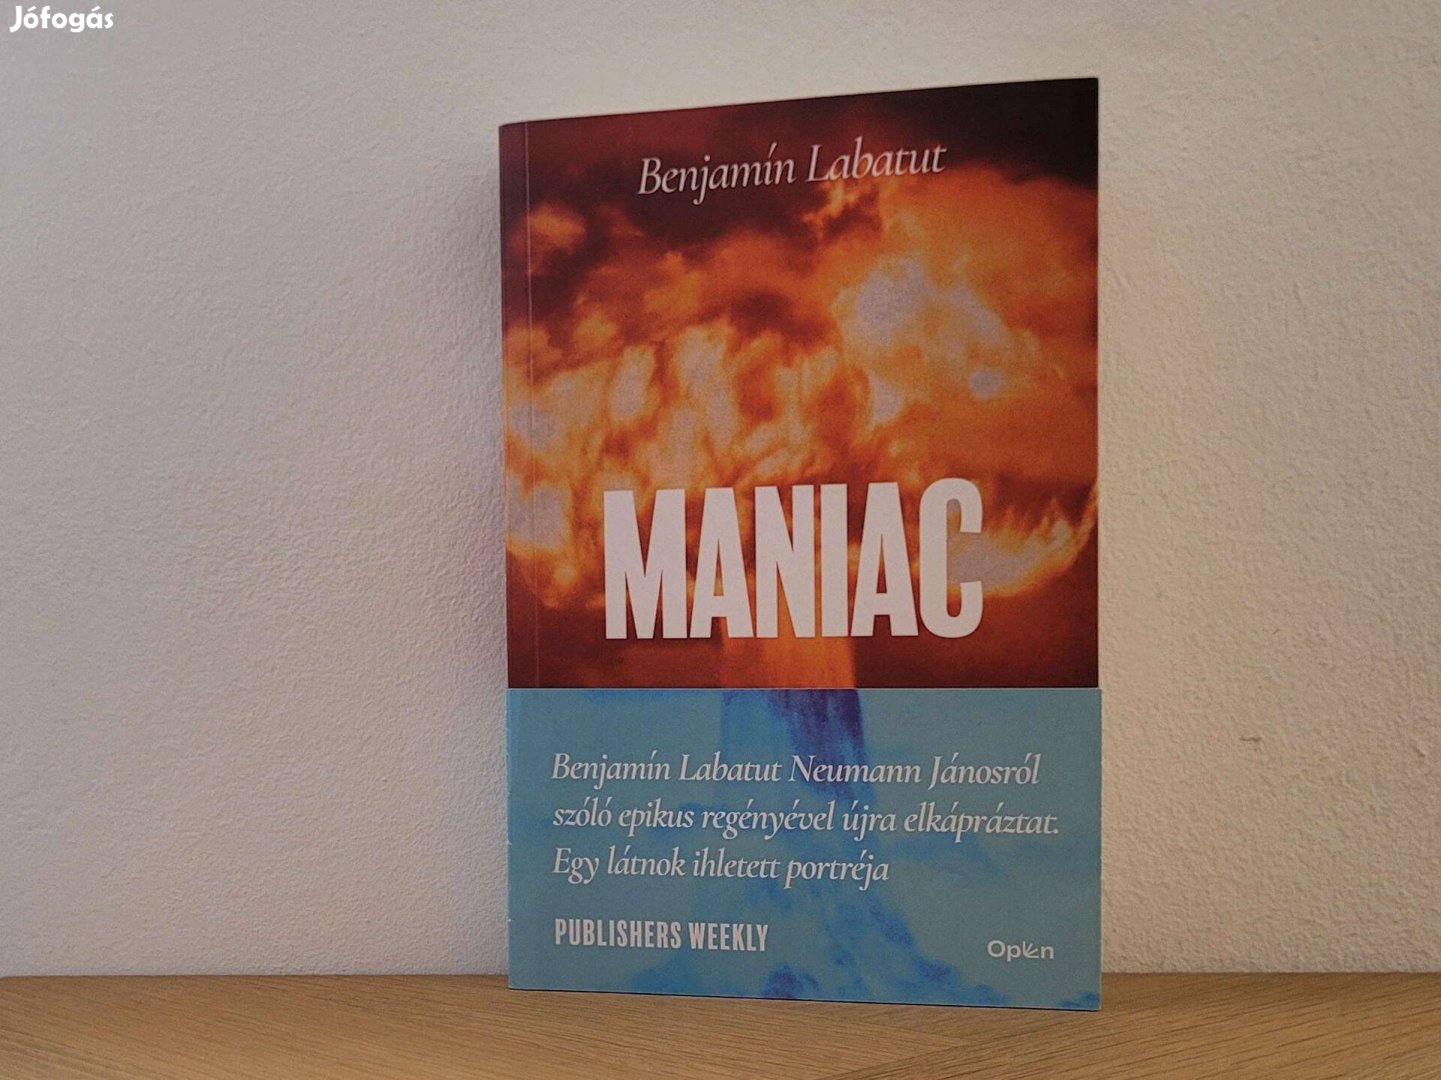 Maniac - Benjamín Labatut könyv eladó